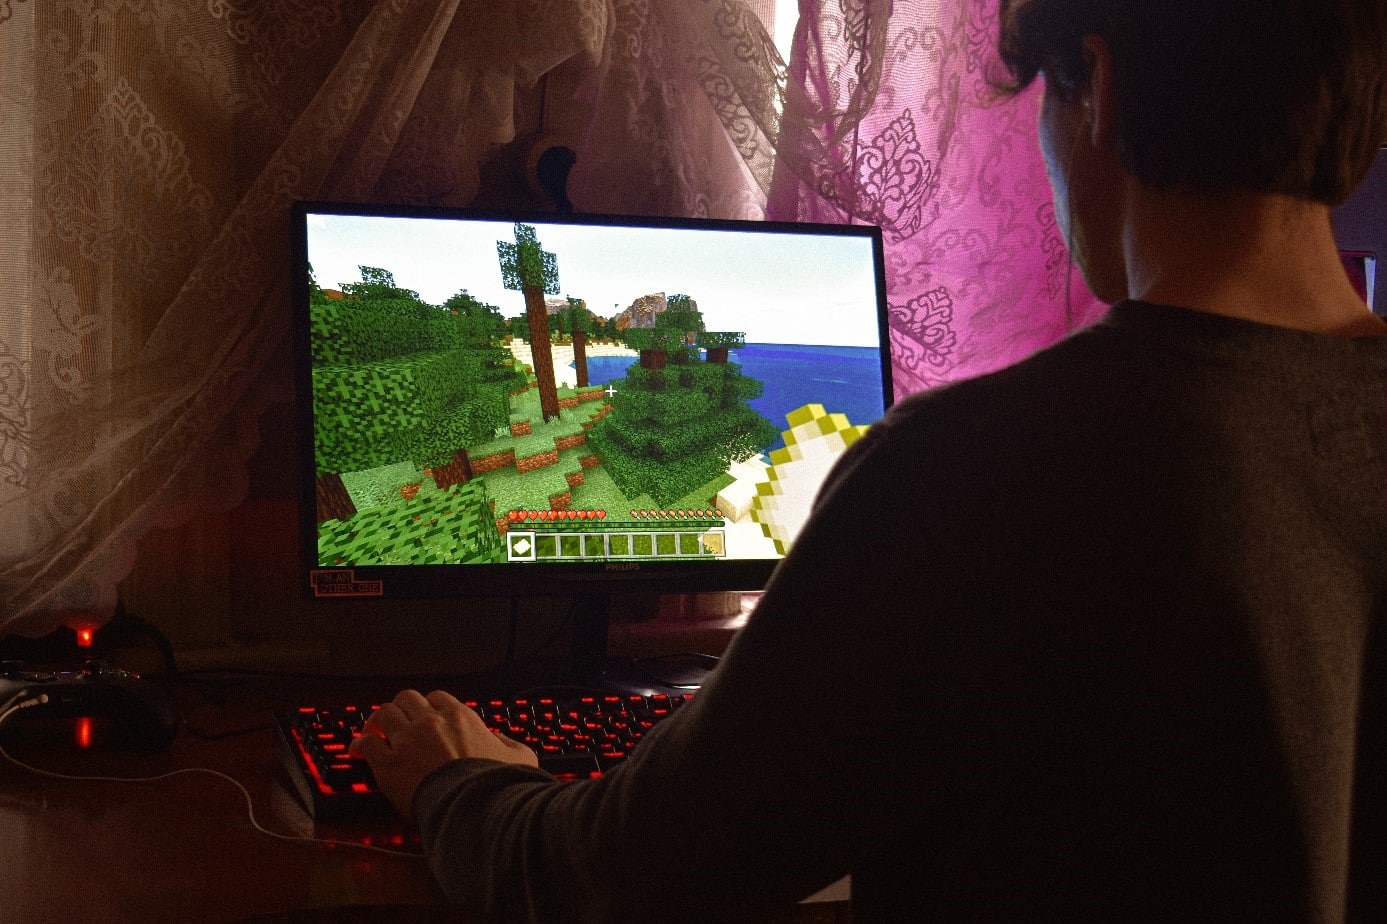 Imagem ilustrativa do jogo Minecraft